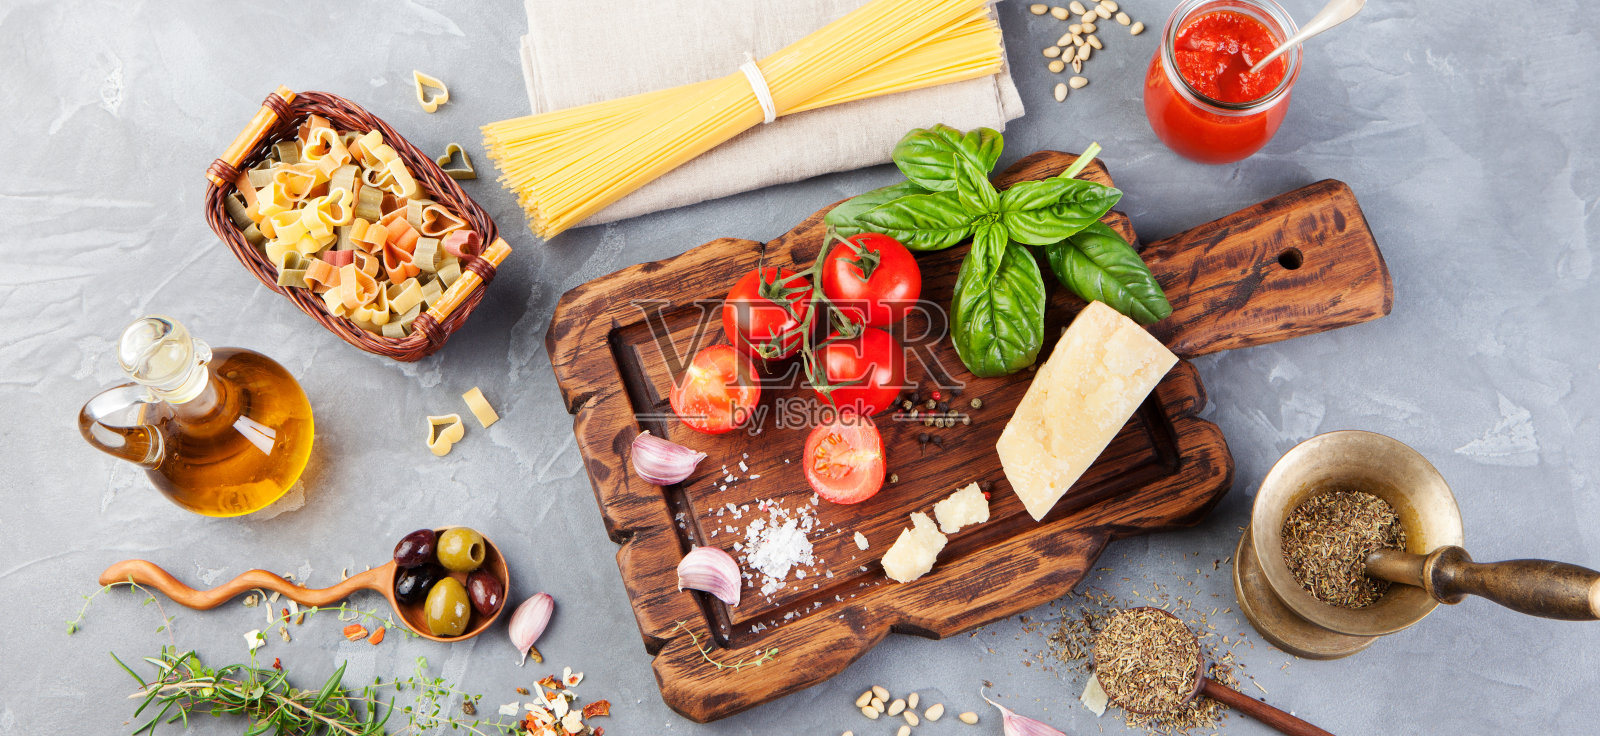 番茄，罗勒，意大利面，帕尔马干酪，橄榄油，大蒜照片摄影图片